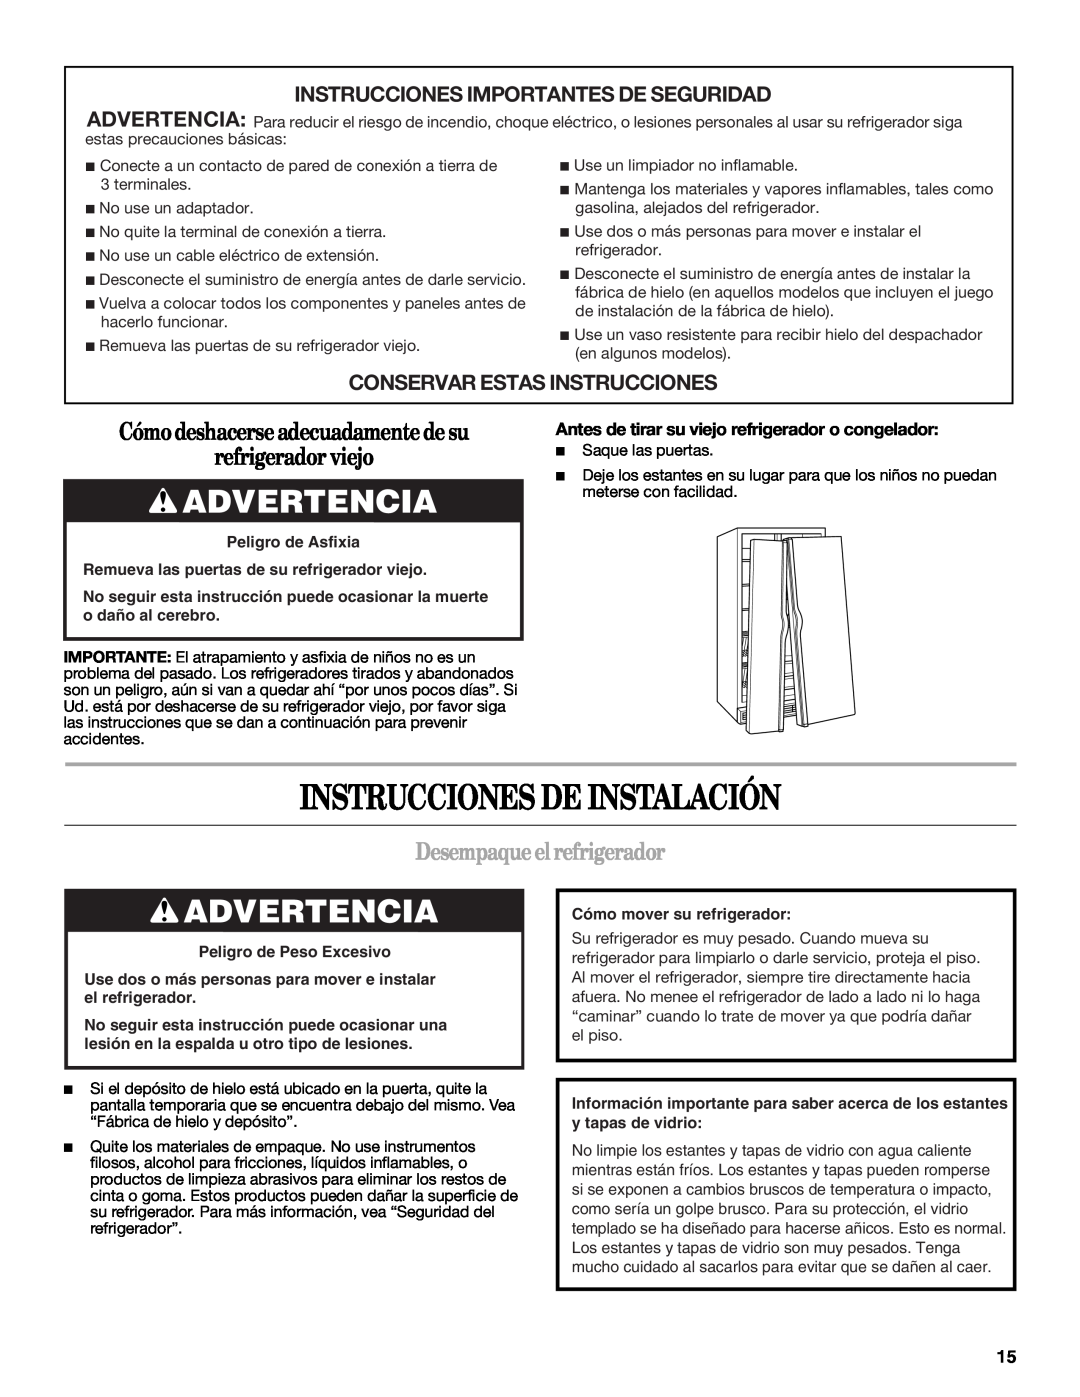 Whirlpool ED5LVAXV warranty Instrucciones De Instalación, Advertencia, Cómodeshacerseadecuadamentedesu refrigeradorviejo 